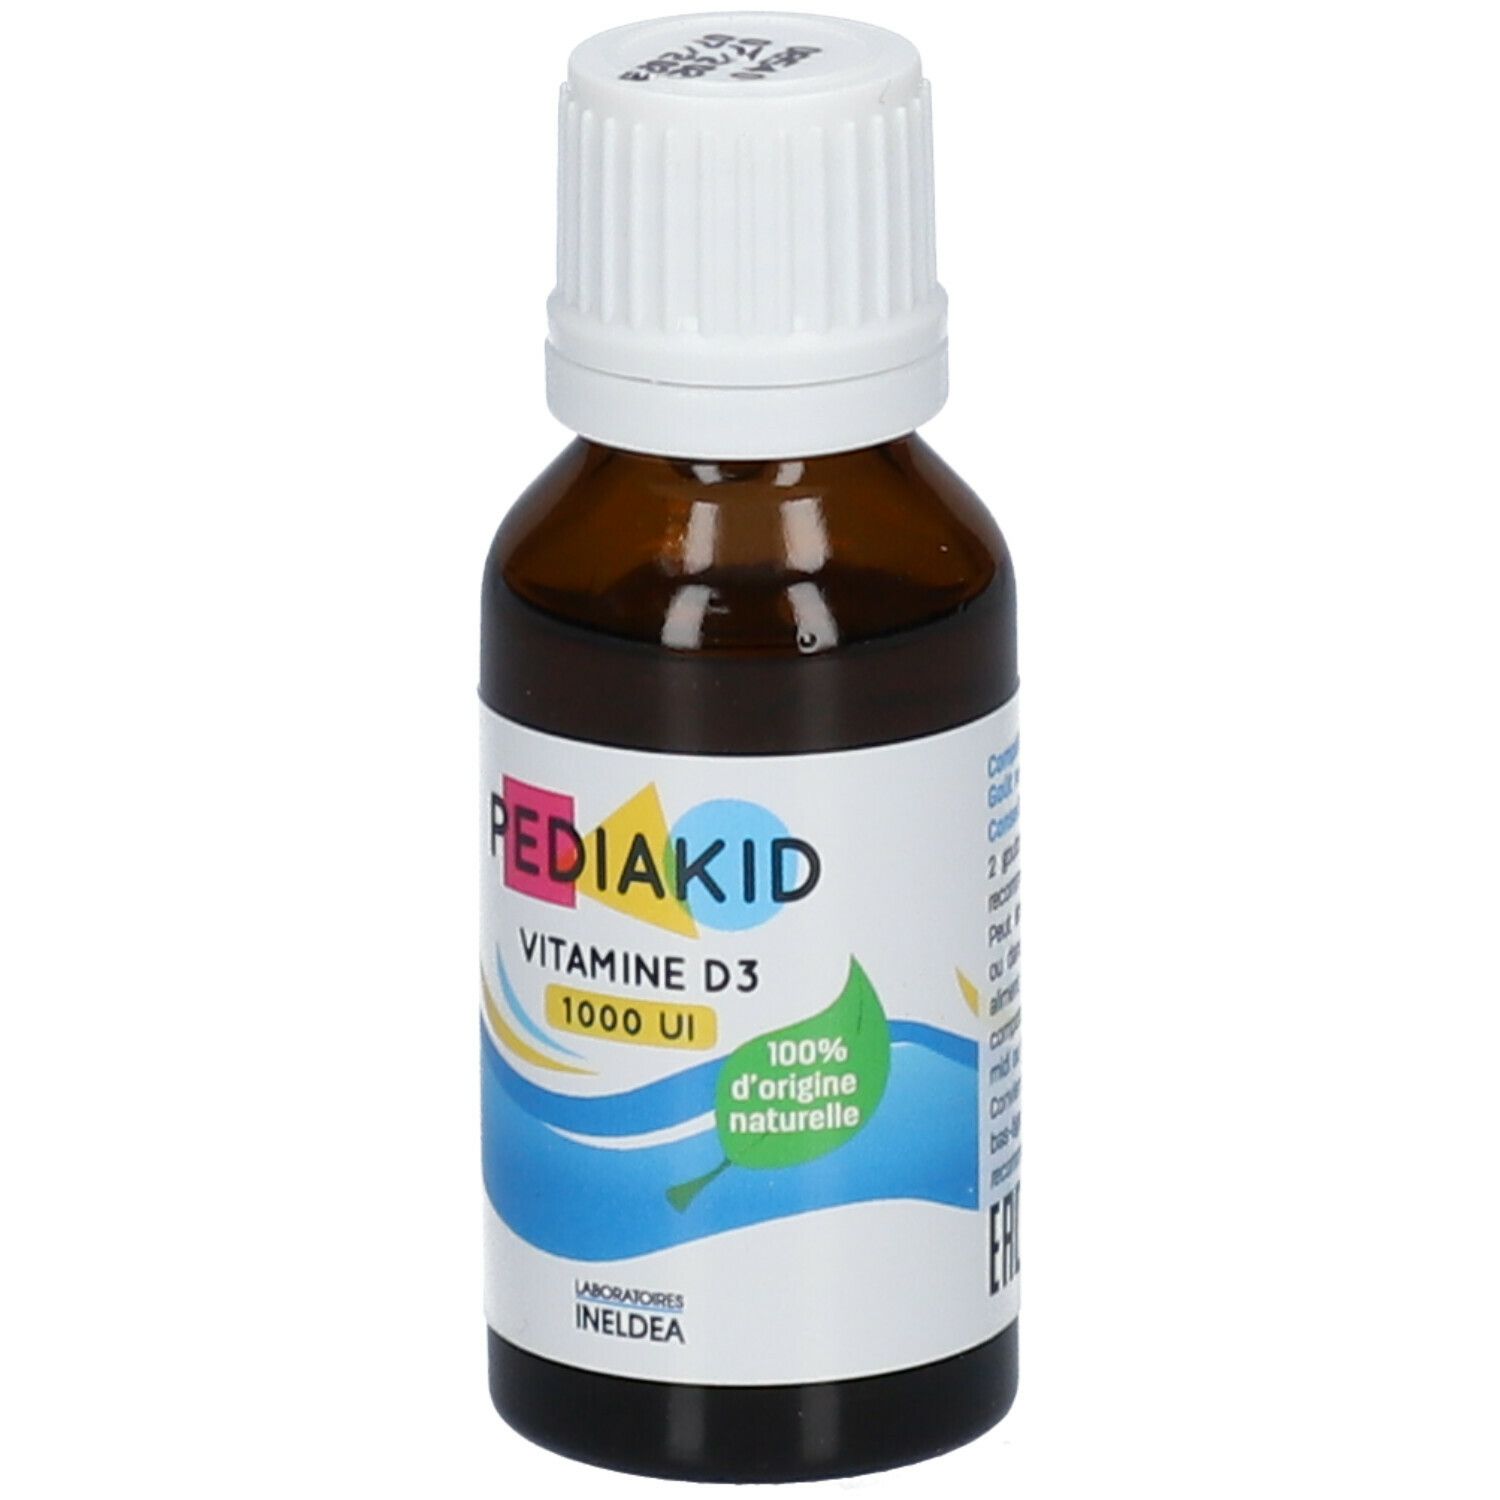 PEDIAKID® Vitamine D3 1000 UI